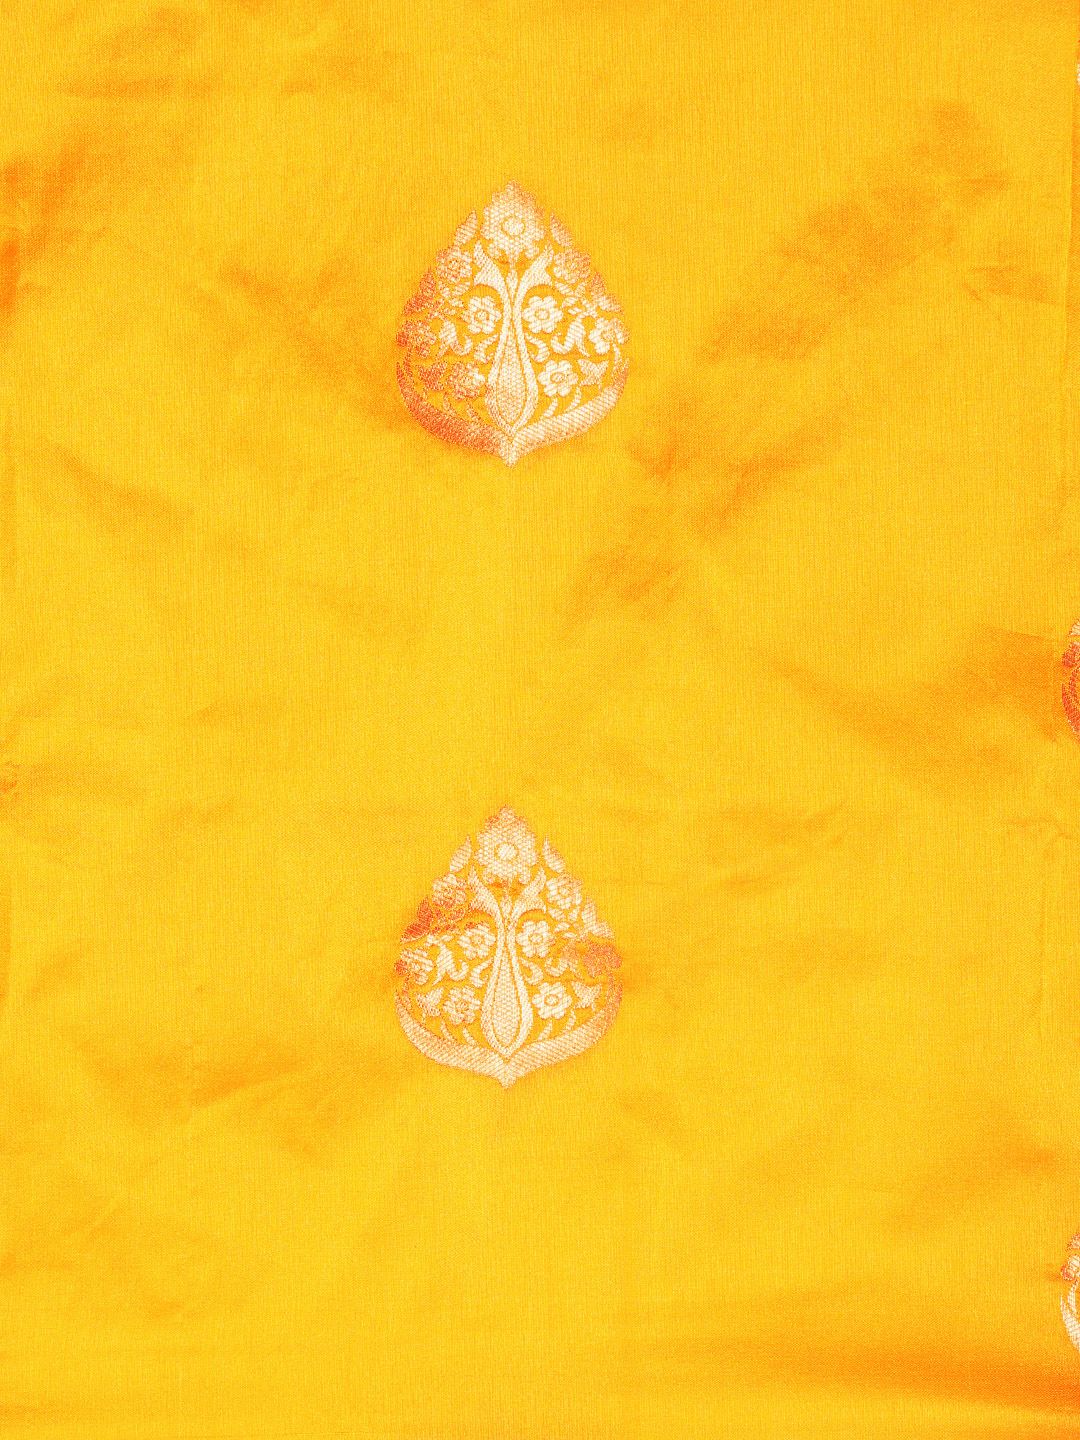 Yellow Traditional banarasi saree looking good